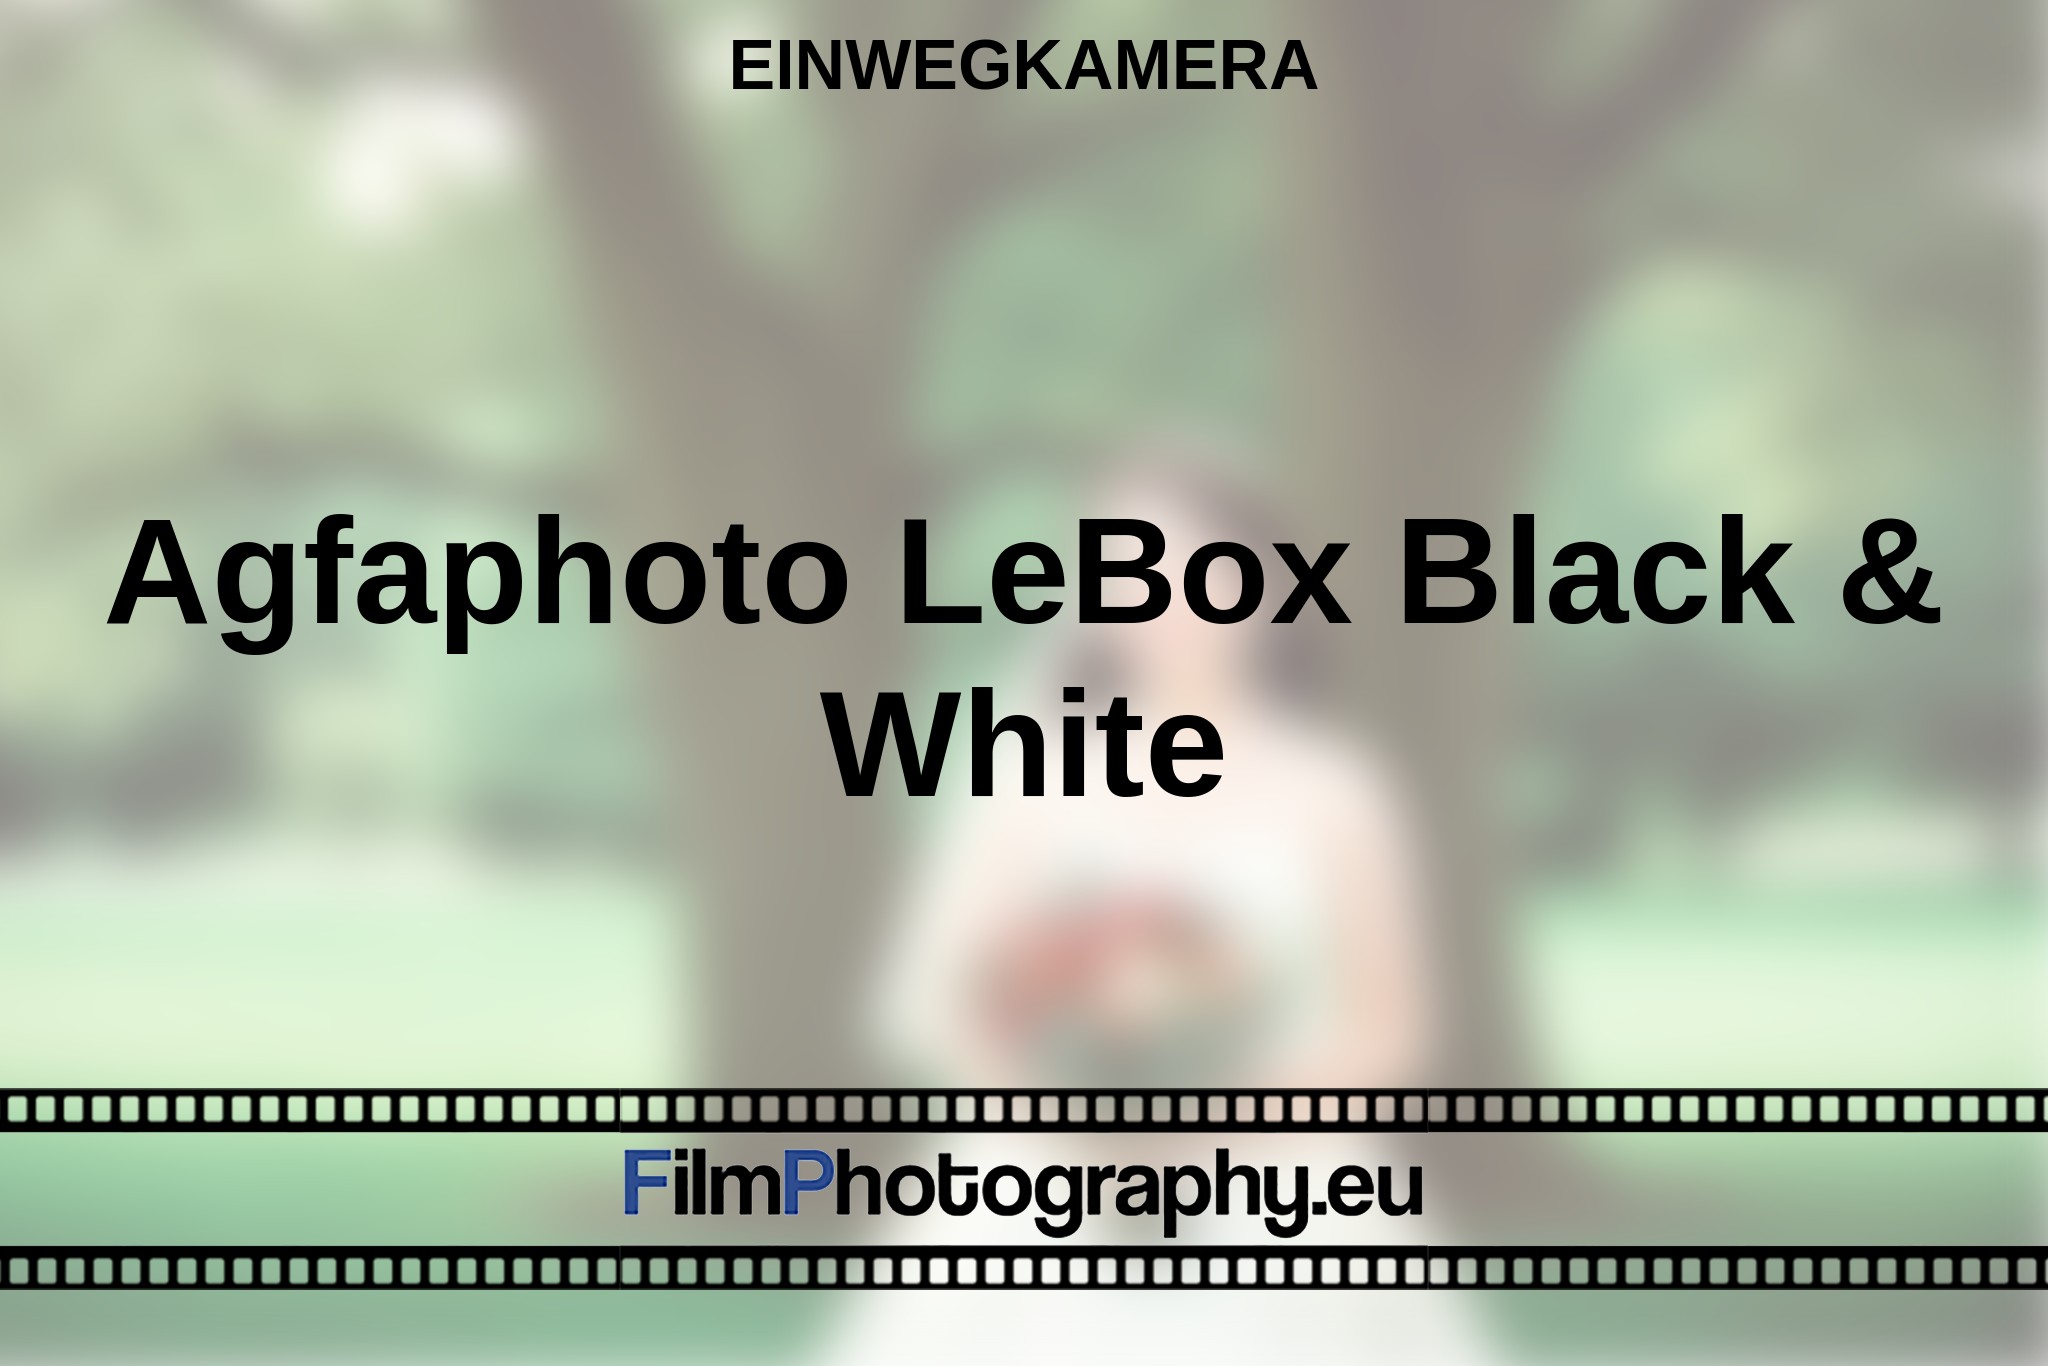 agfaphoto-lebox-black-white-einwegkamera-bnv.jpg